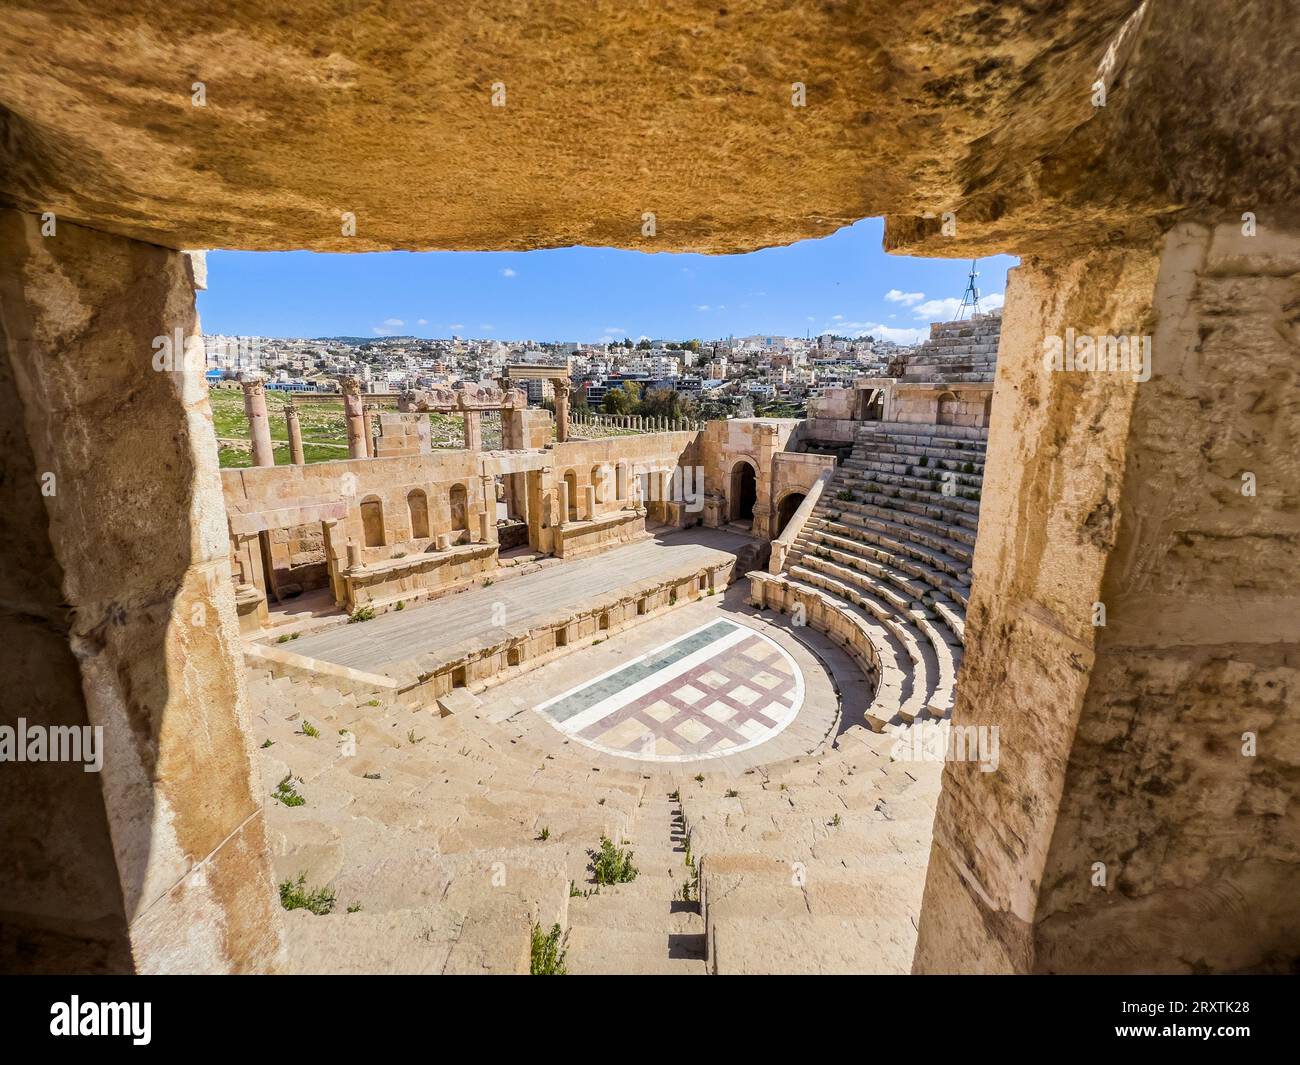 Le grand Théâtre du Nord dans l'ancienne ville de Jerash, censé être fondé en 331 av. J.-C. par Alexandre le Grand, Jerash, Jordanie, Moyen-Orient Banque D'Images